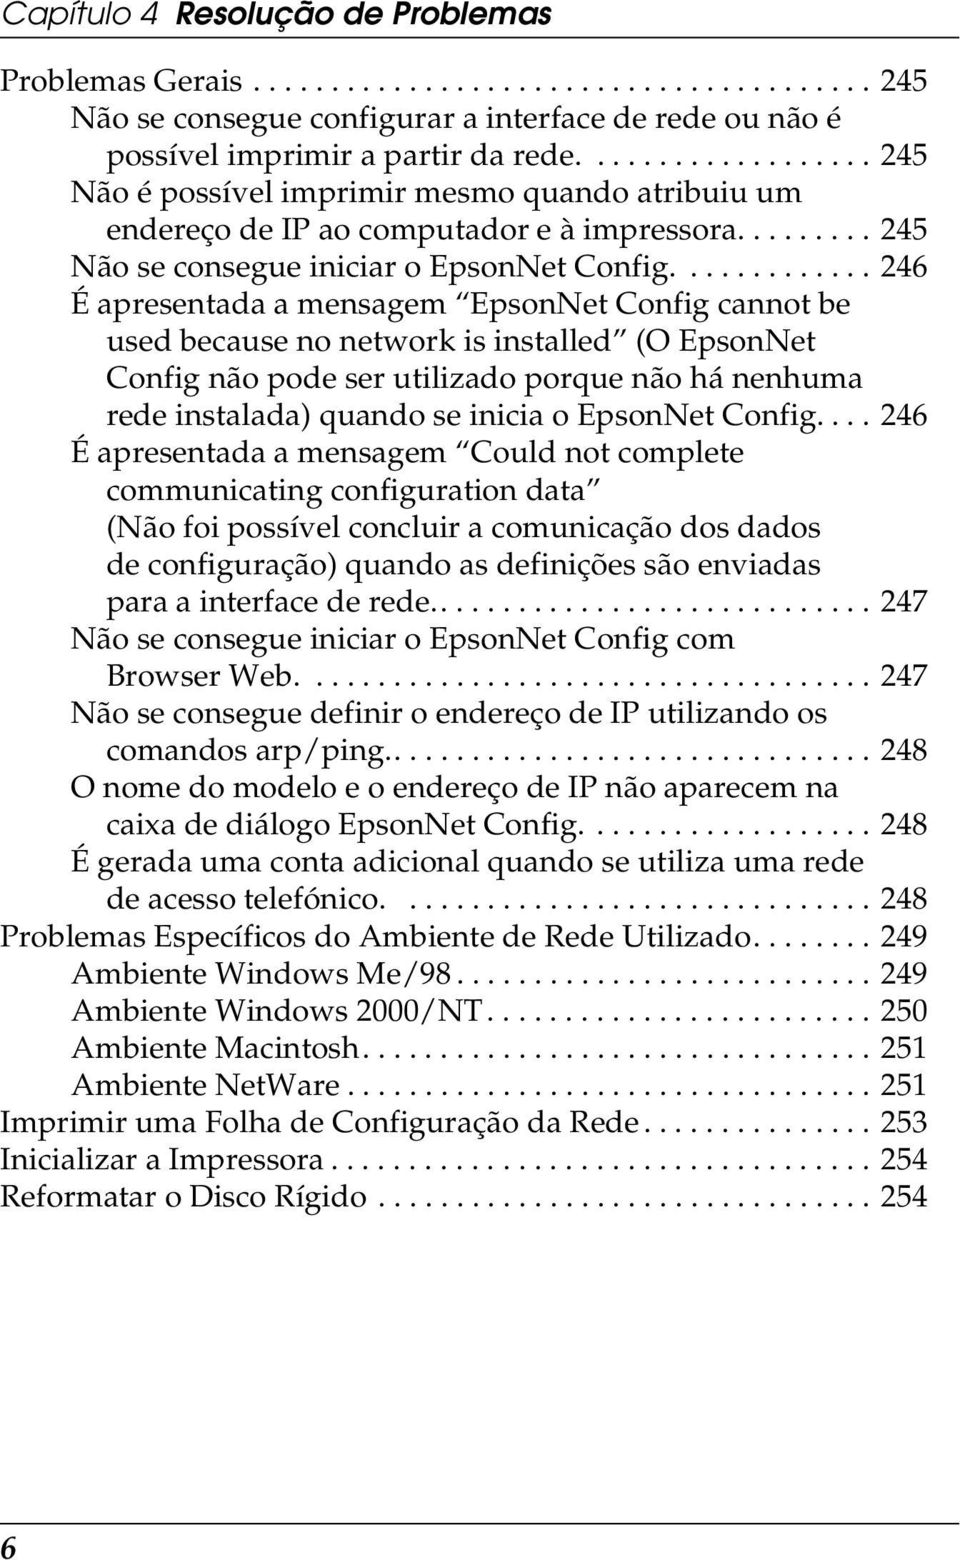 ............ 46 É apresentada a mensagem EpsonNet Config cannot be used because no network is installed (O EpsonNet Config não pode ser utilizado porque não há nenhuma rede instalada) quando se